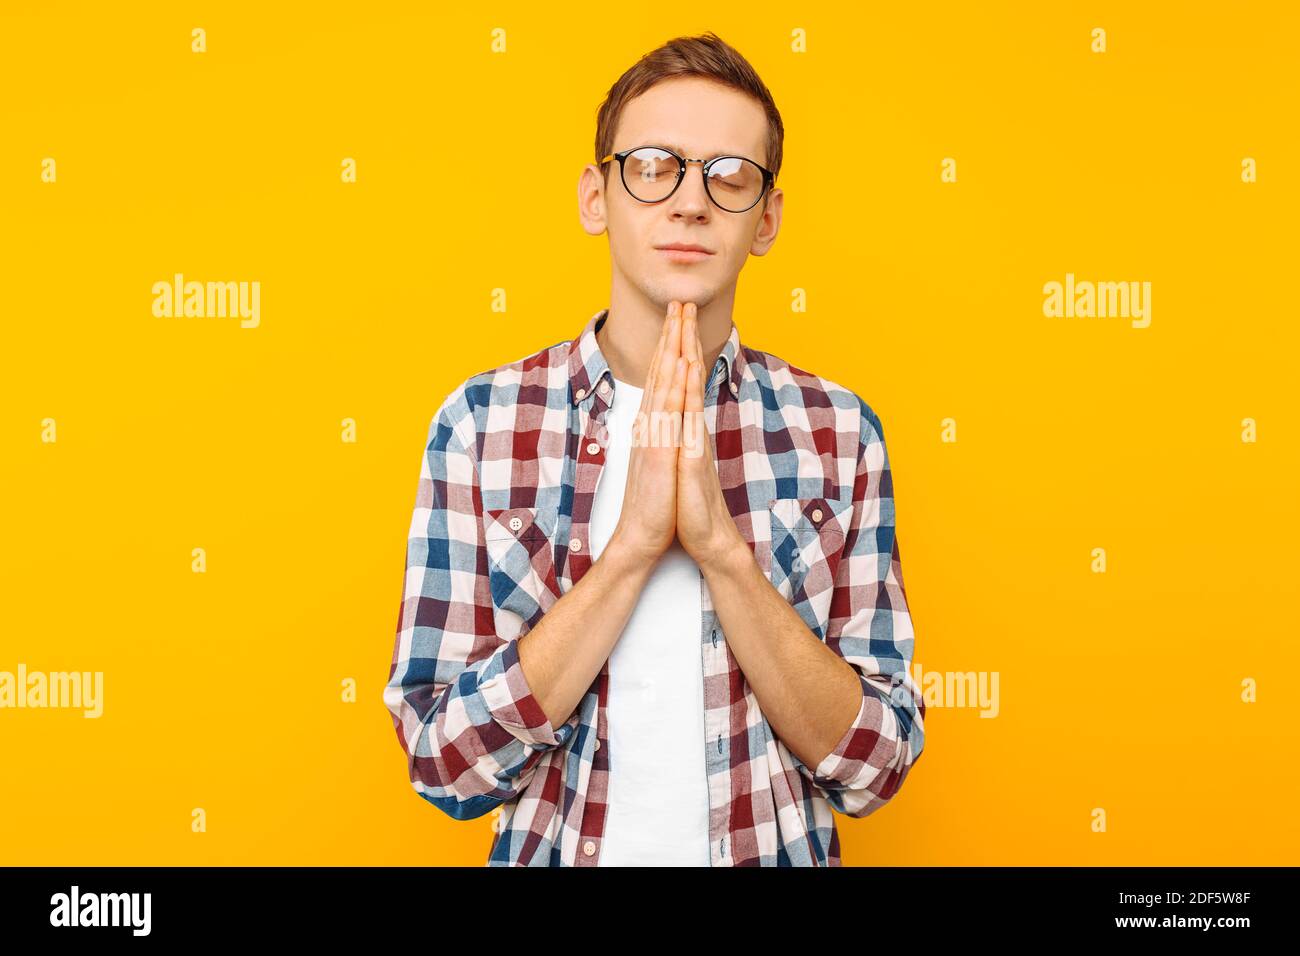 Porträt eines jungen Mannes mit Brille, ein Kerl in einem karierten Hemd, der seine Hände im Gebet oder Meditation faltete, sah entspannt und ruhig aus, träumte und war w Stockfoto